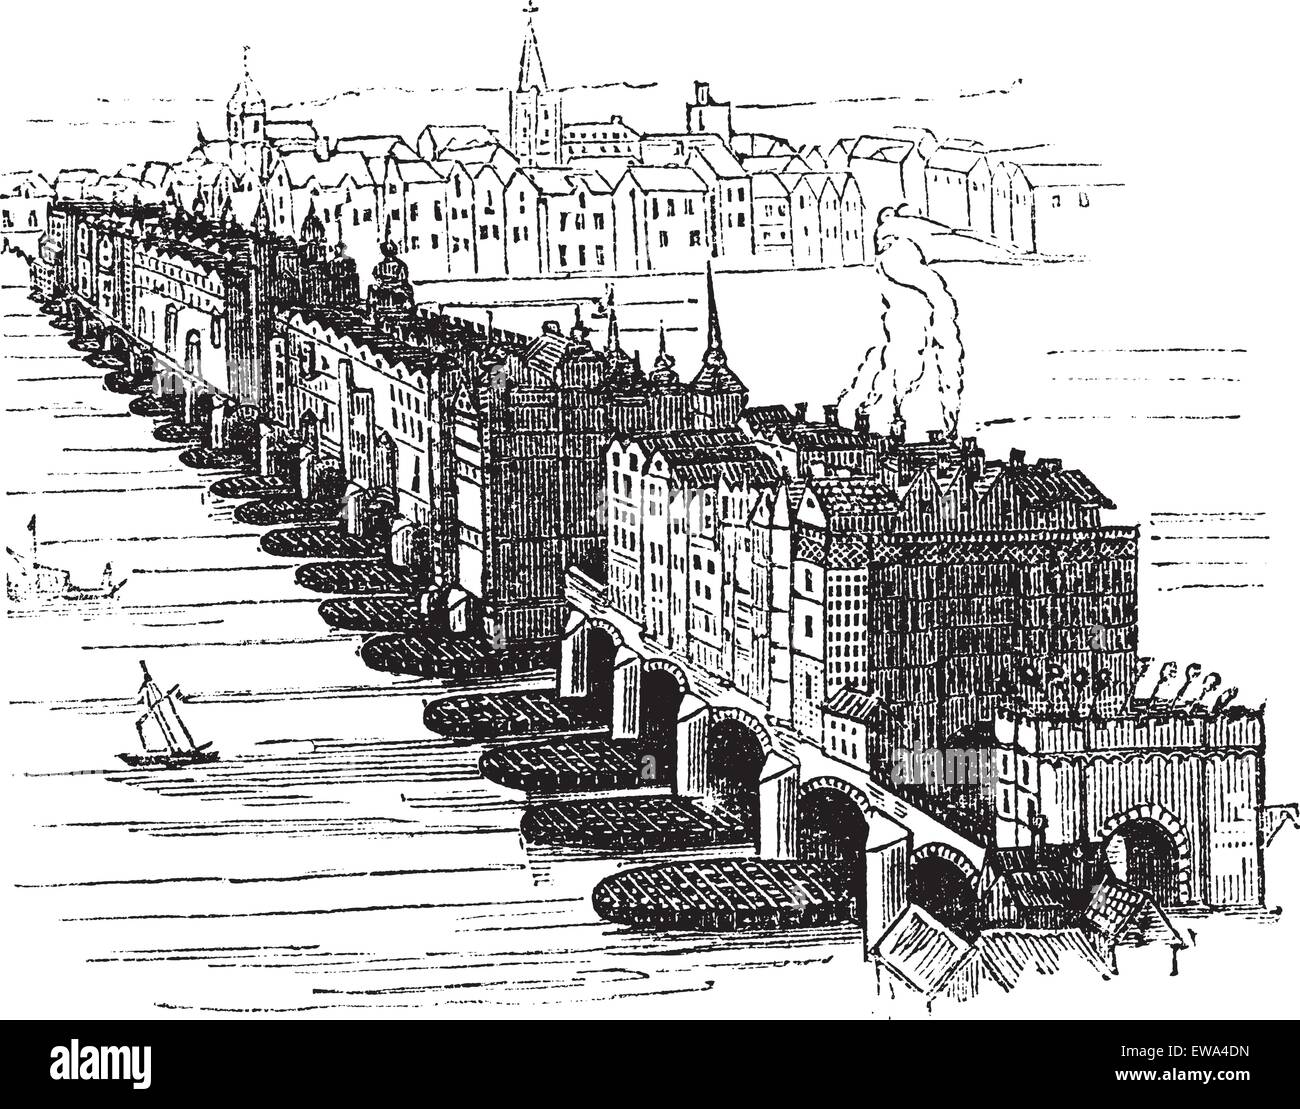 Alte mittelalterliche London Bridge, England, Vereinigtes Königreich, 1616, Vintage Illustration eingraviert. Trousset Enzyklopädie (1886-1891). Stock Vektor